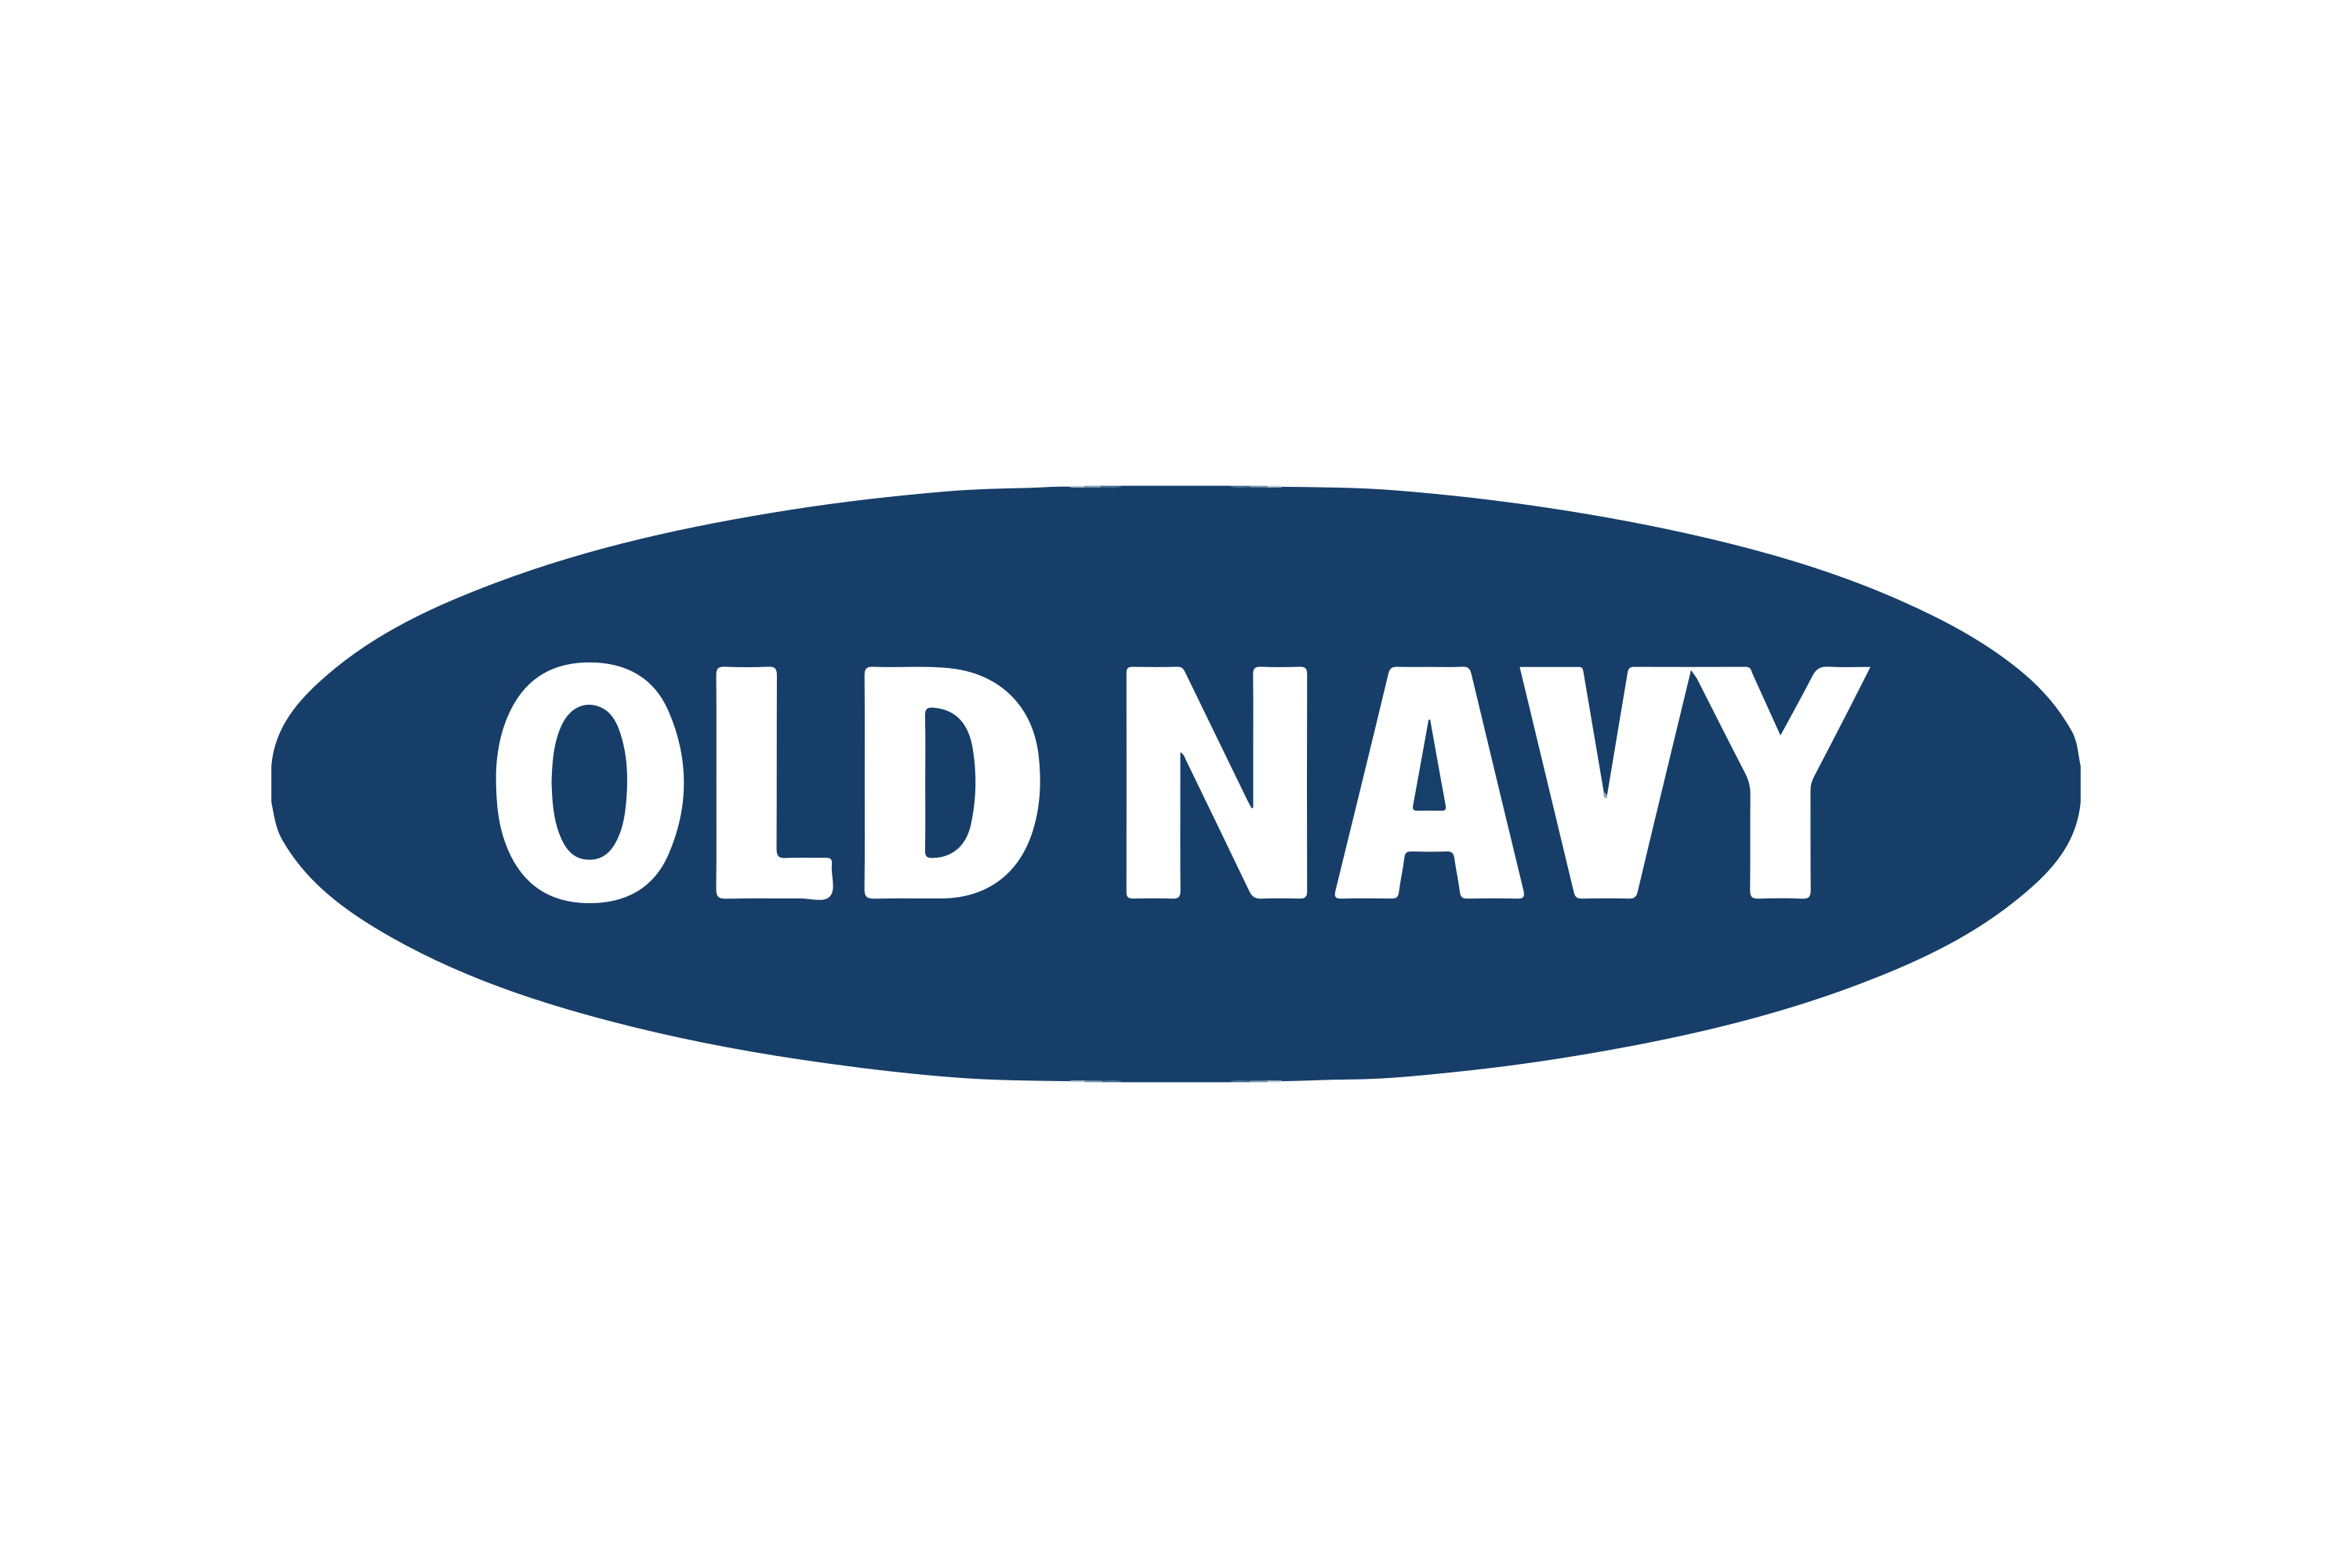 Download Old Navy Logo in SVG Vector or PNG File Format - Logo.wine